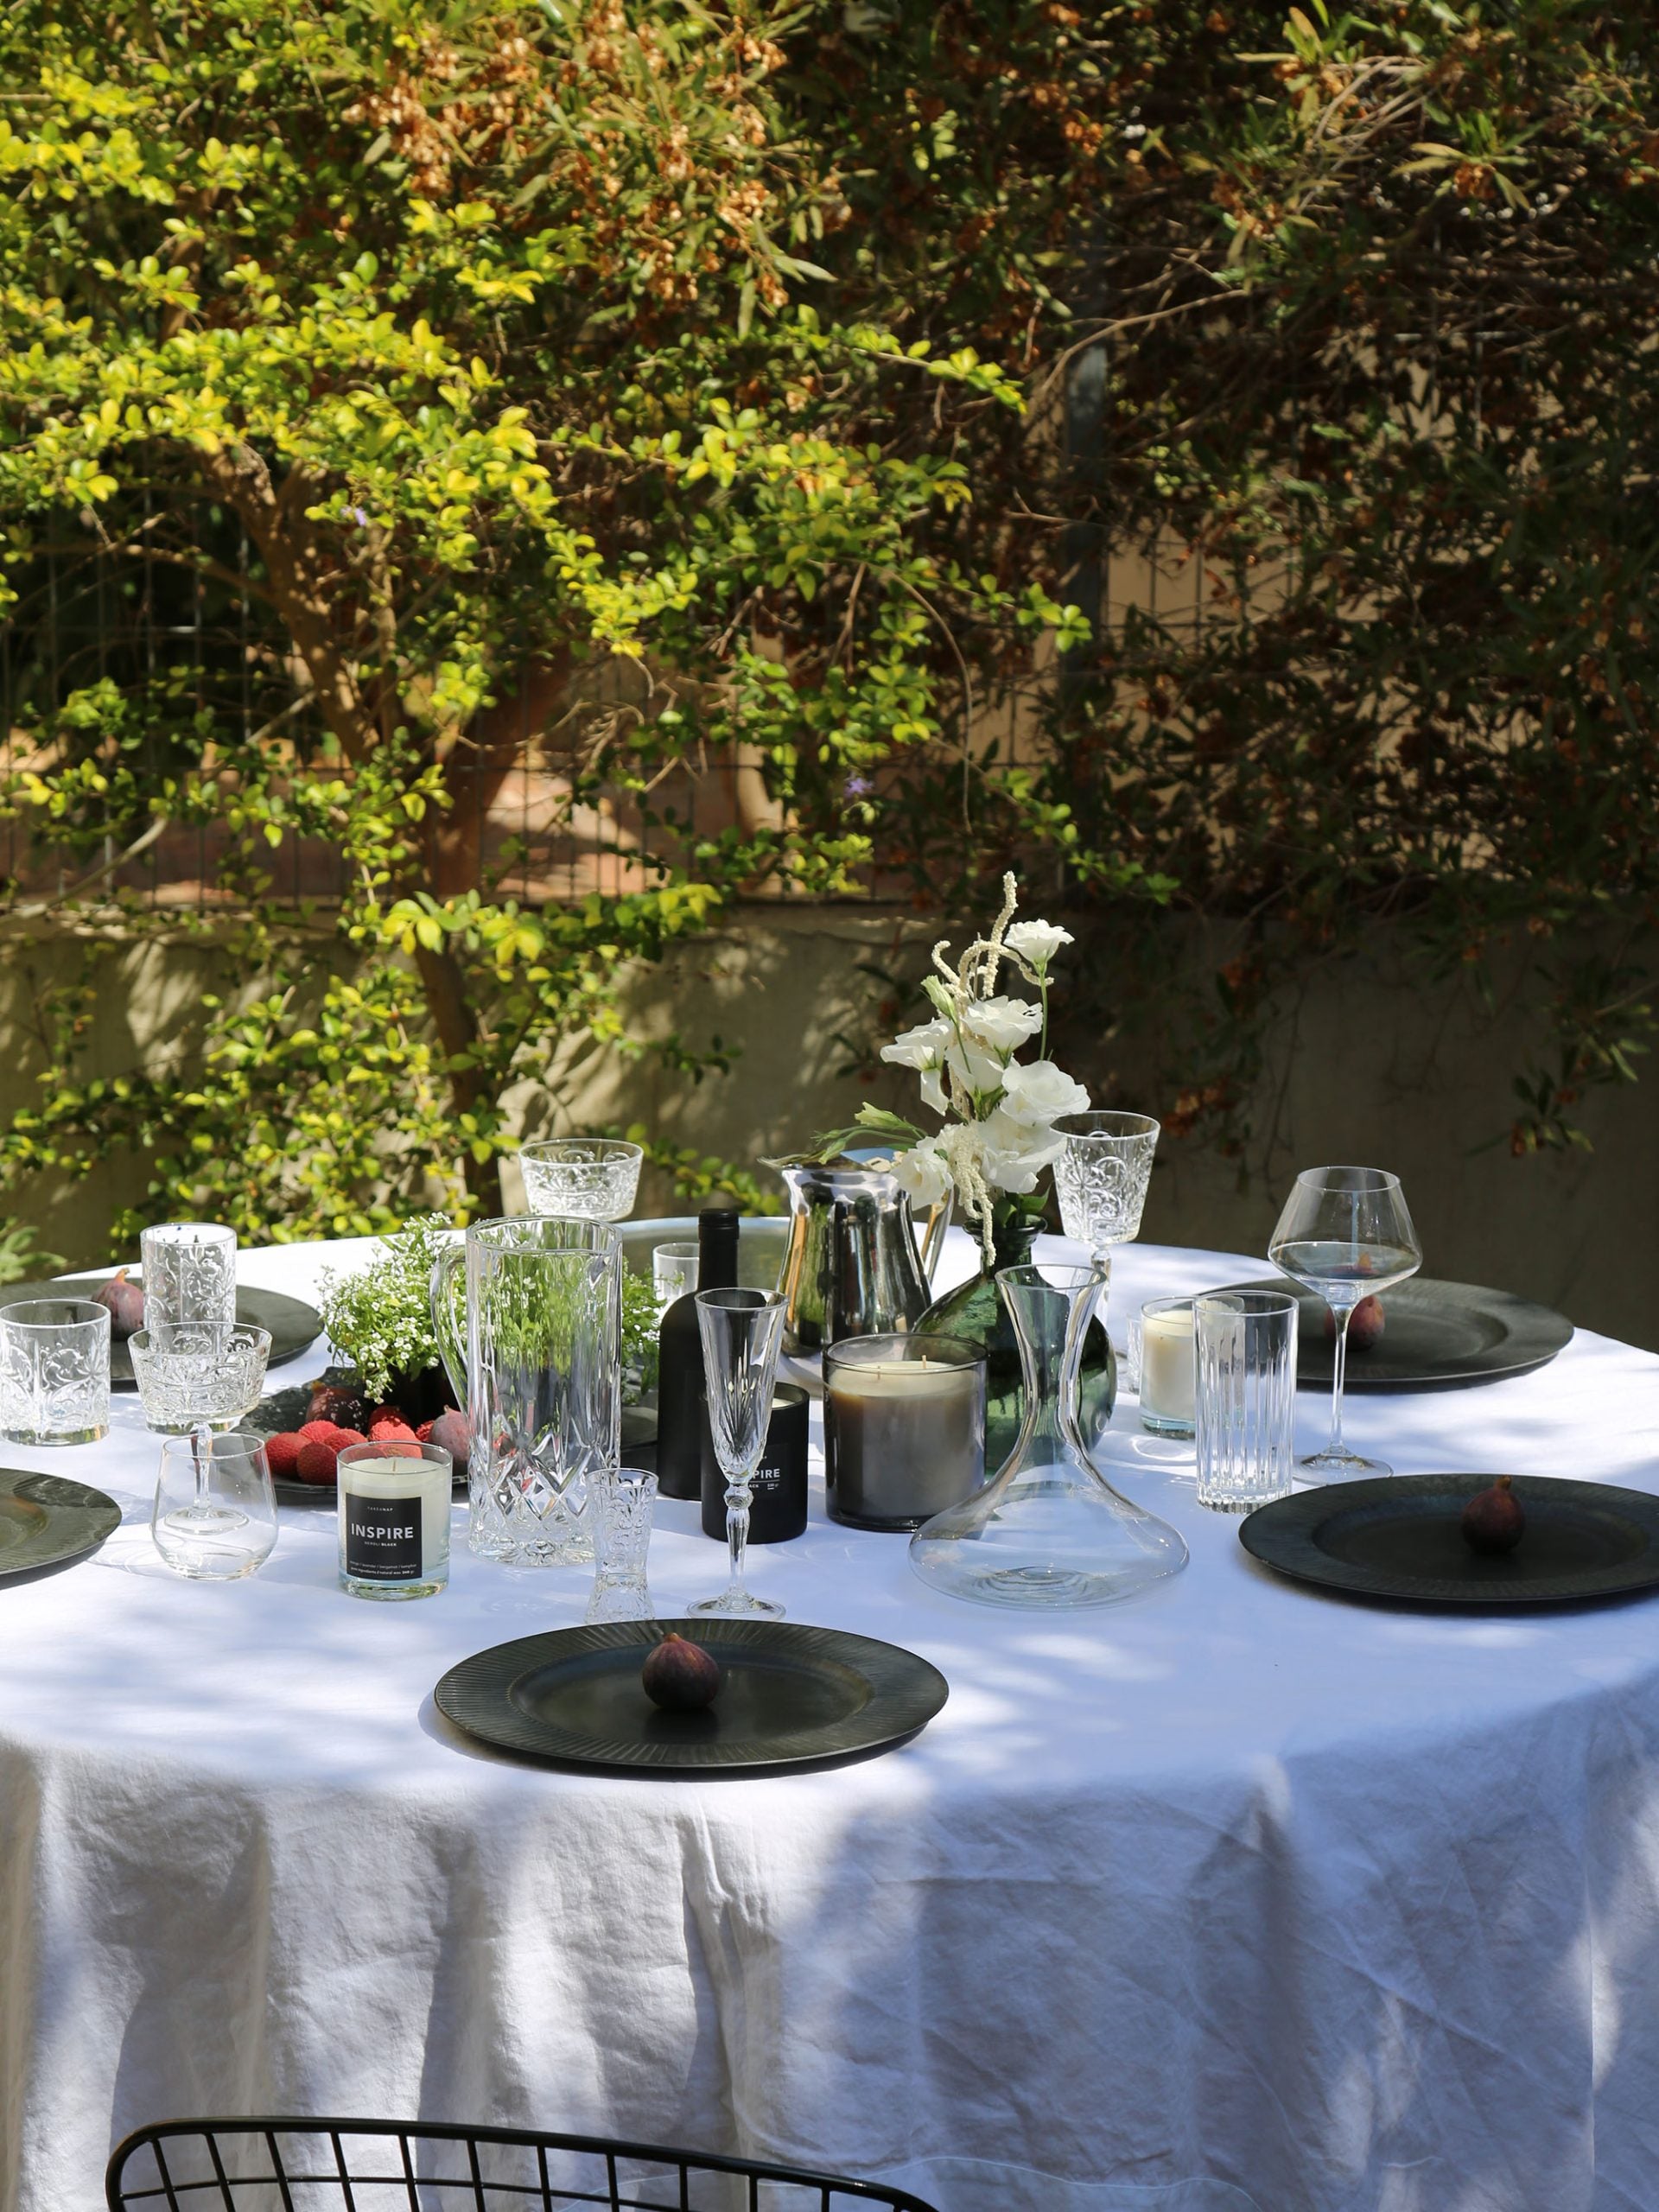 שולחן בחצר של בית ערוך מפה לבנה עם צלחות כוסות וויסקי ויין ונרות ריחניים